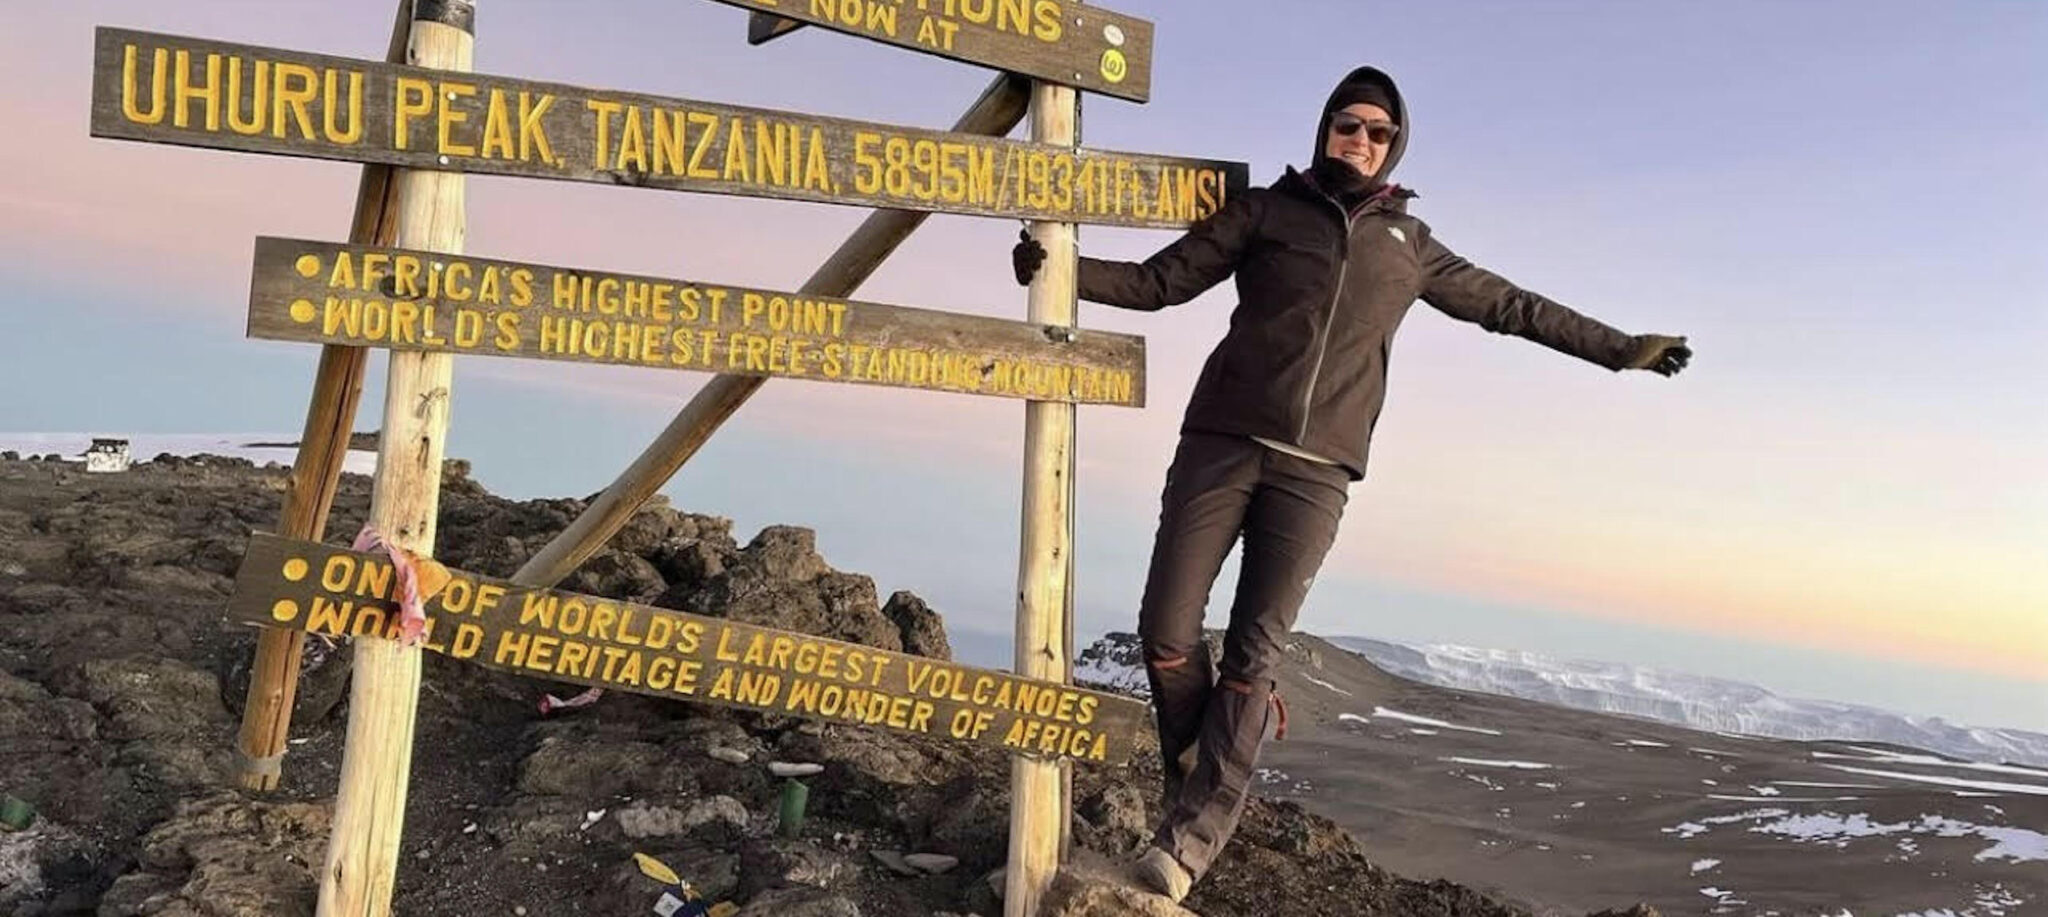 Shawn hanging off the sign at Mt Kilimanjaro